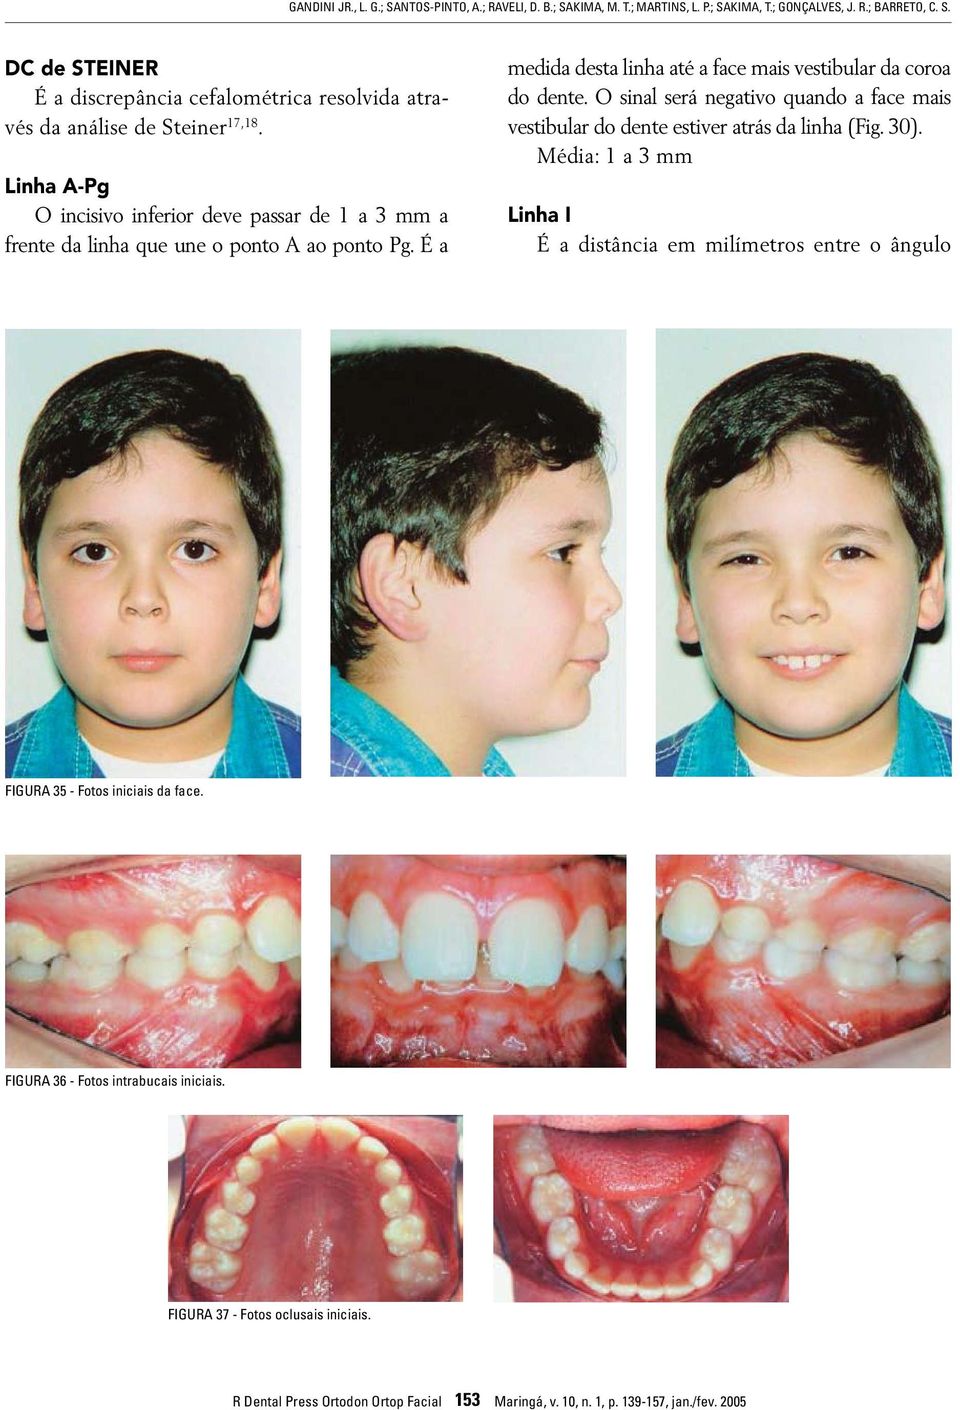 O sinal será negativo quando a face mais vestibular do dente estiver atrás da linha (Fig. 30).